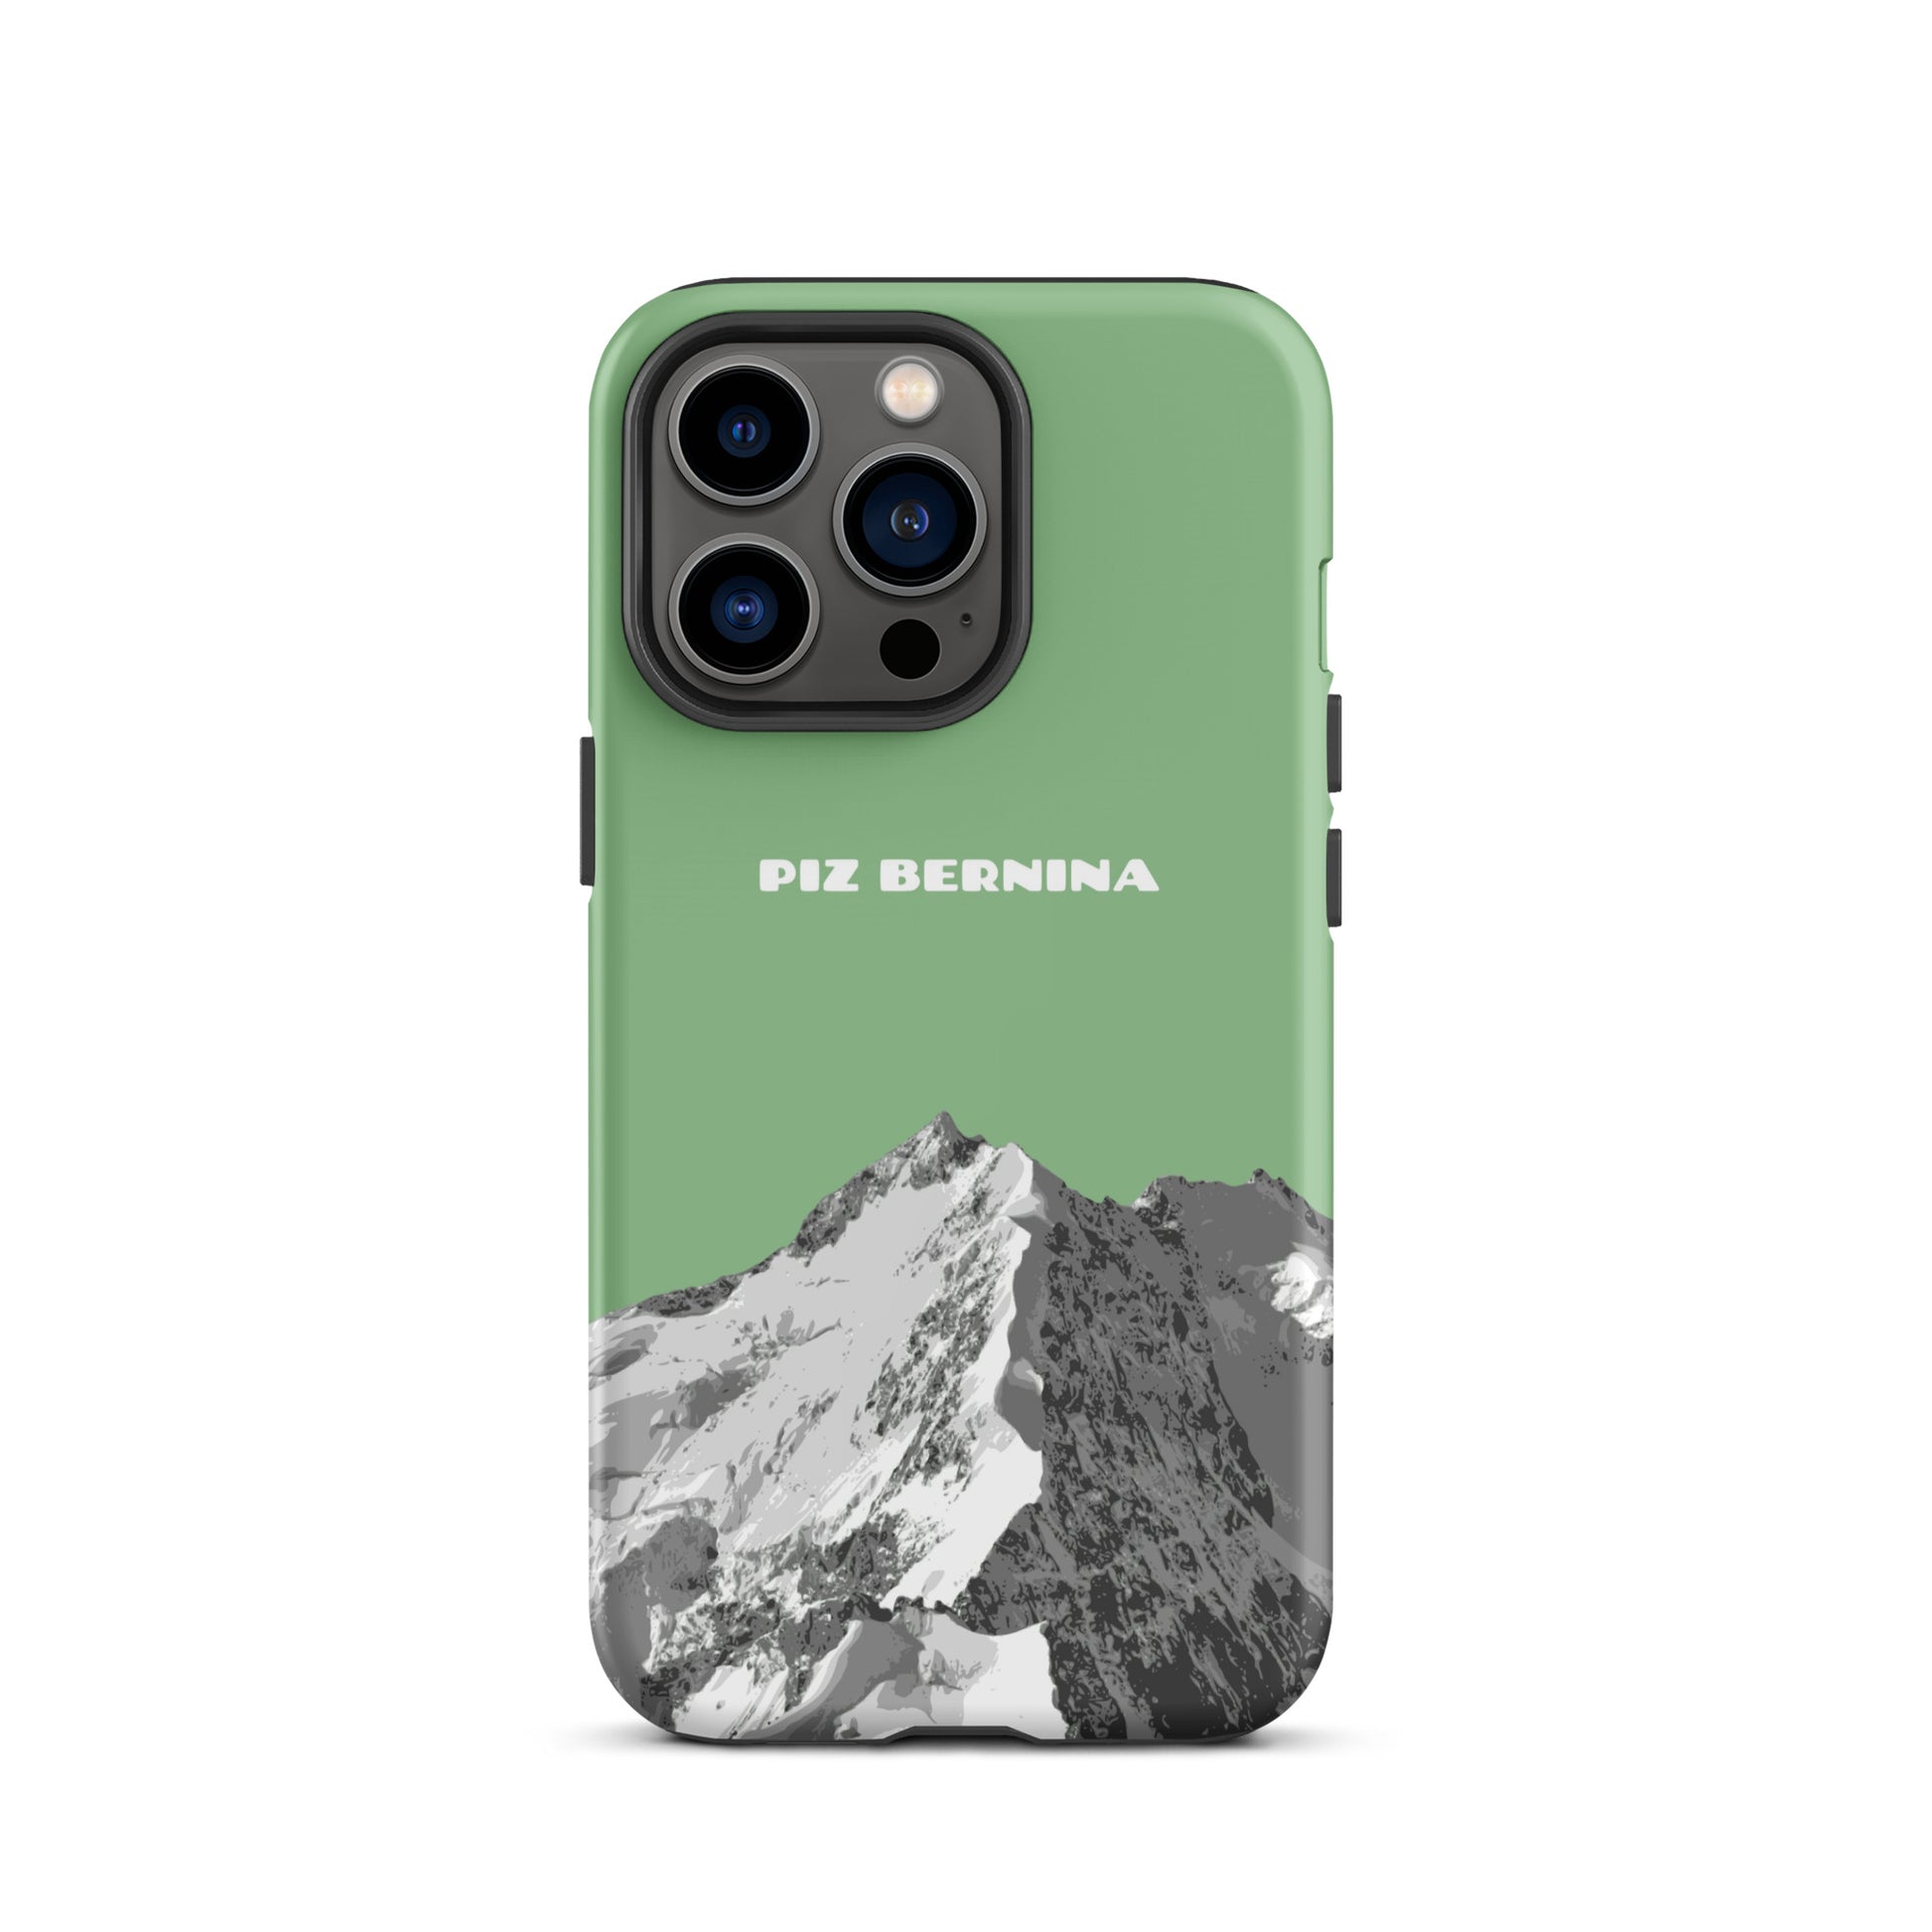 Hülle für das iPhone 13 Pro von Apple in der Farbe Hellgrün, dass den Piz Bernina in Graubünden zeigt.